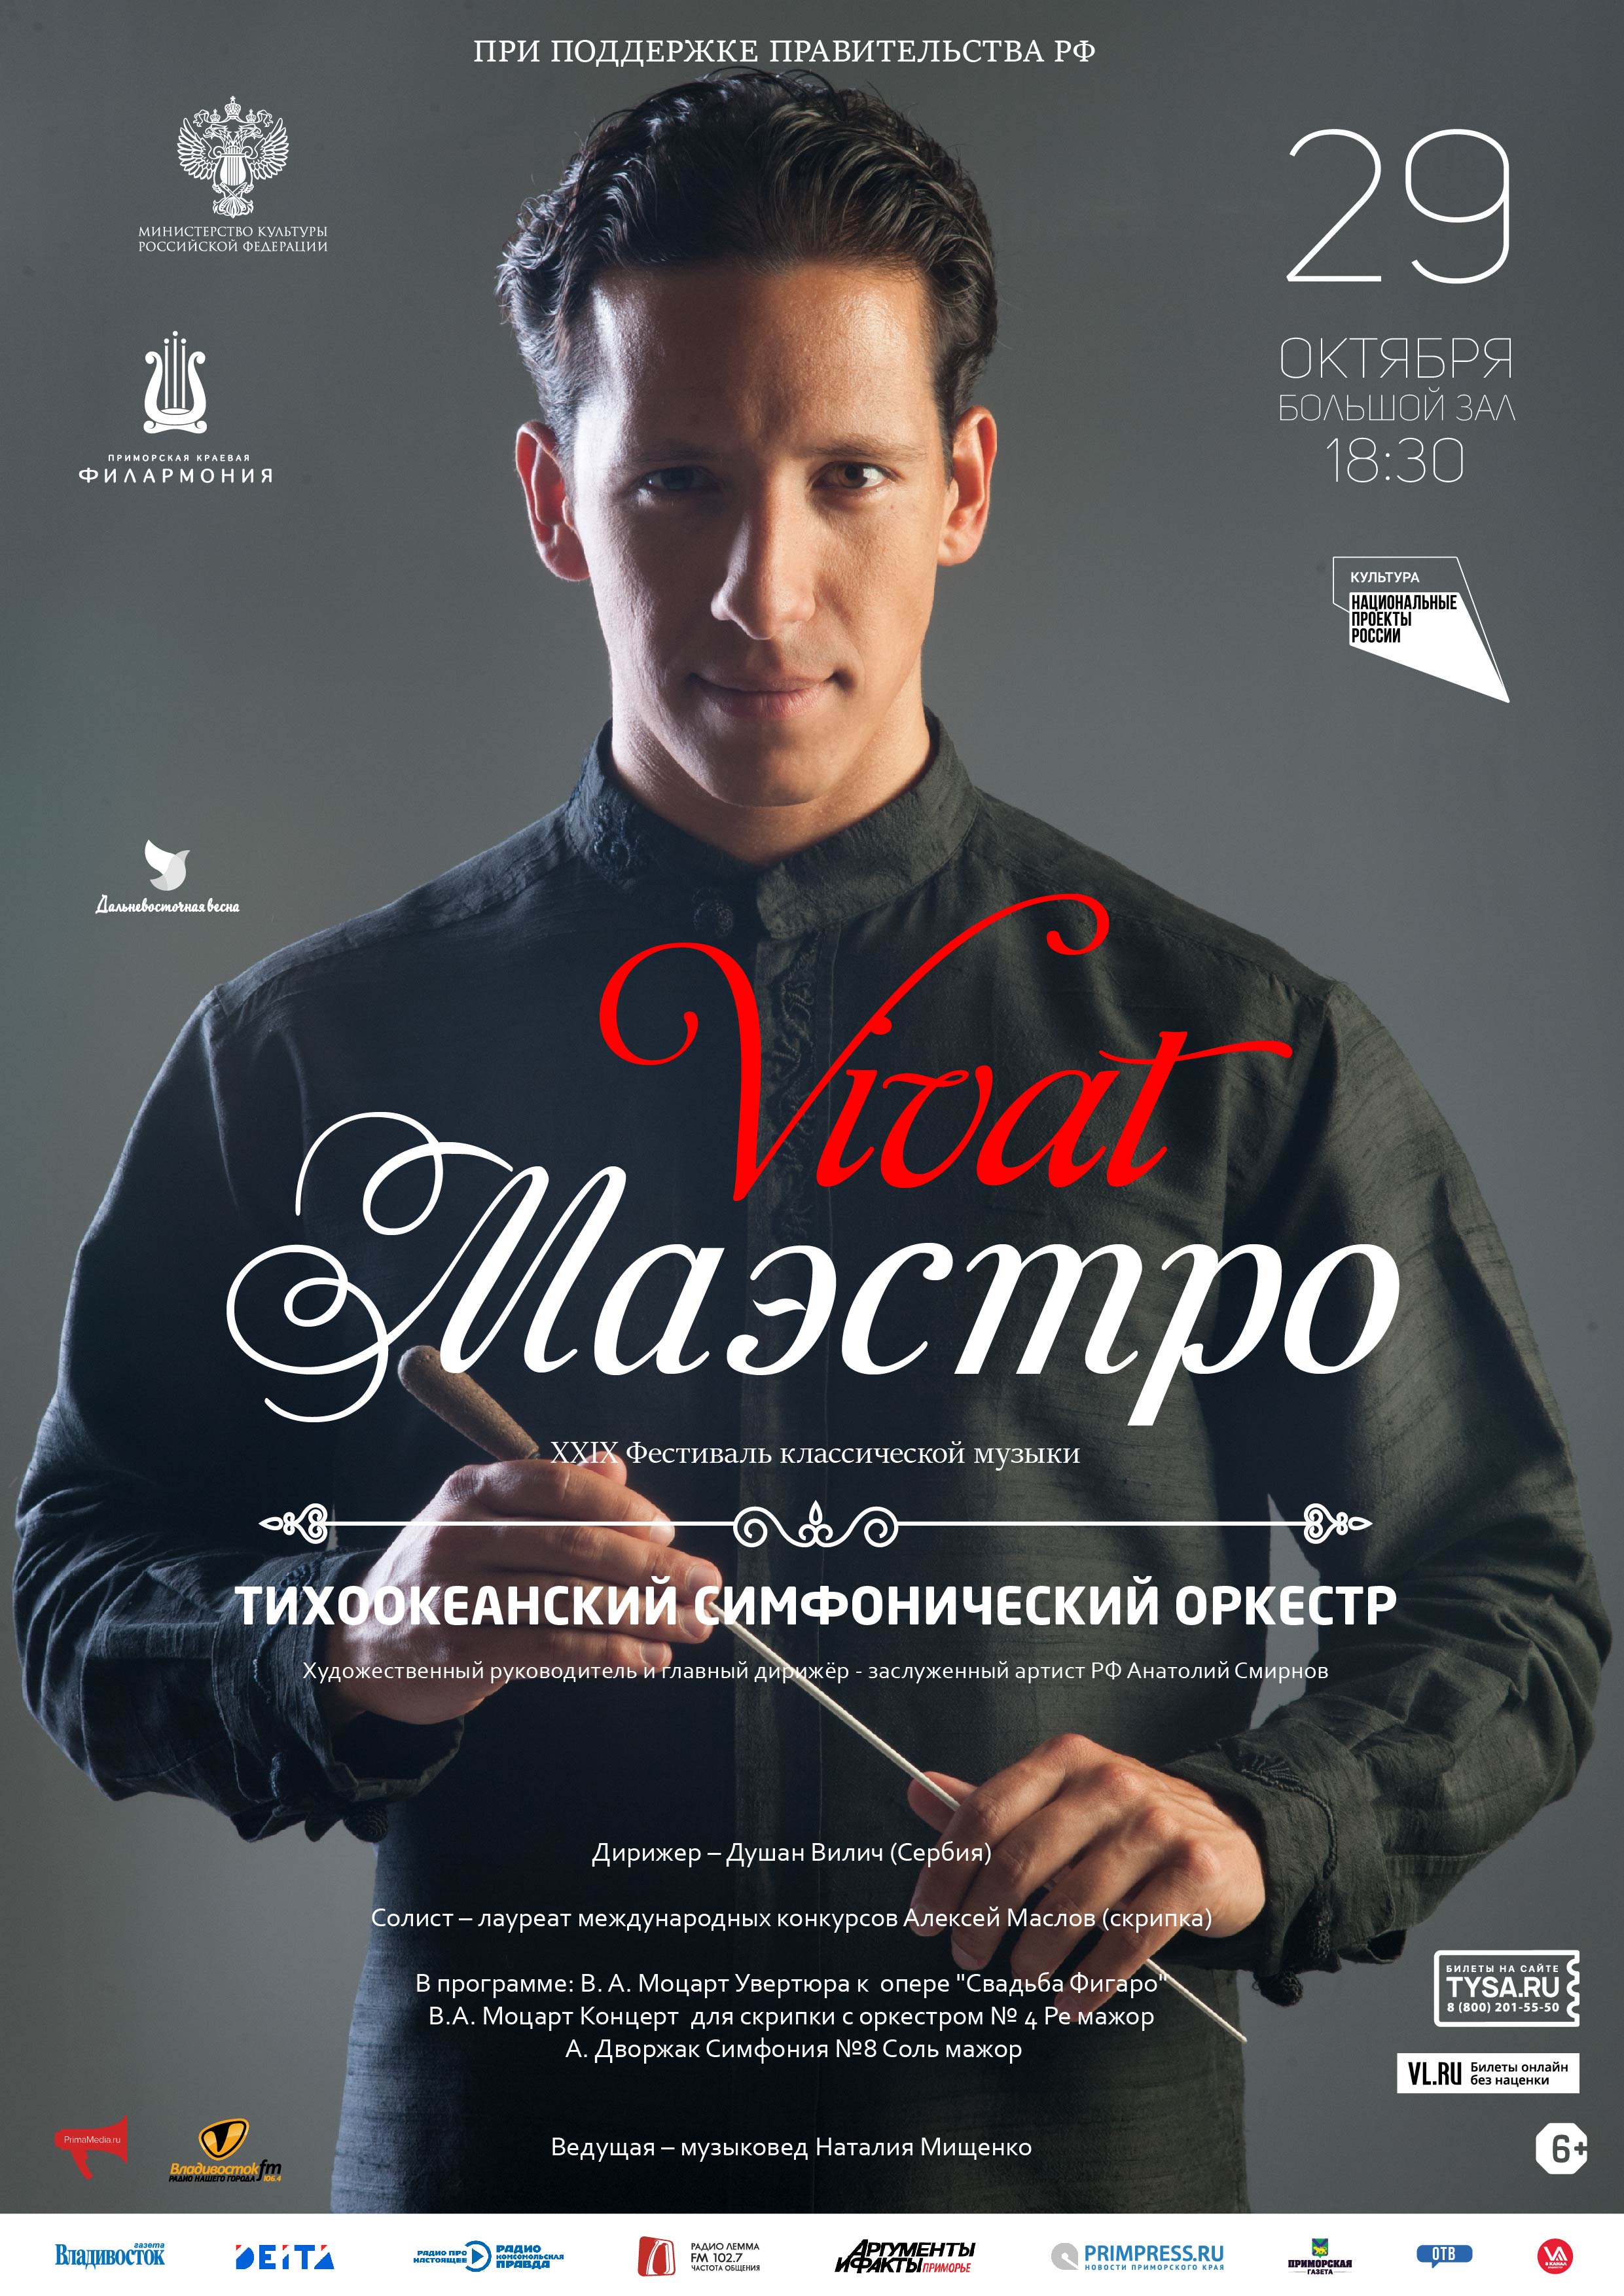 29 октября XXIX Фестиваль классической музыки «Дальневосточная Весна» Концертная программа  «Vivat, Maestro!» Тихоокеанский симфонический оркестр